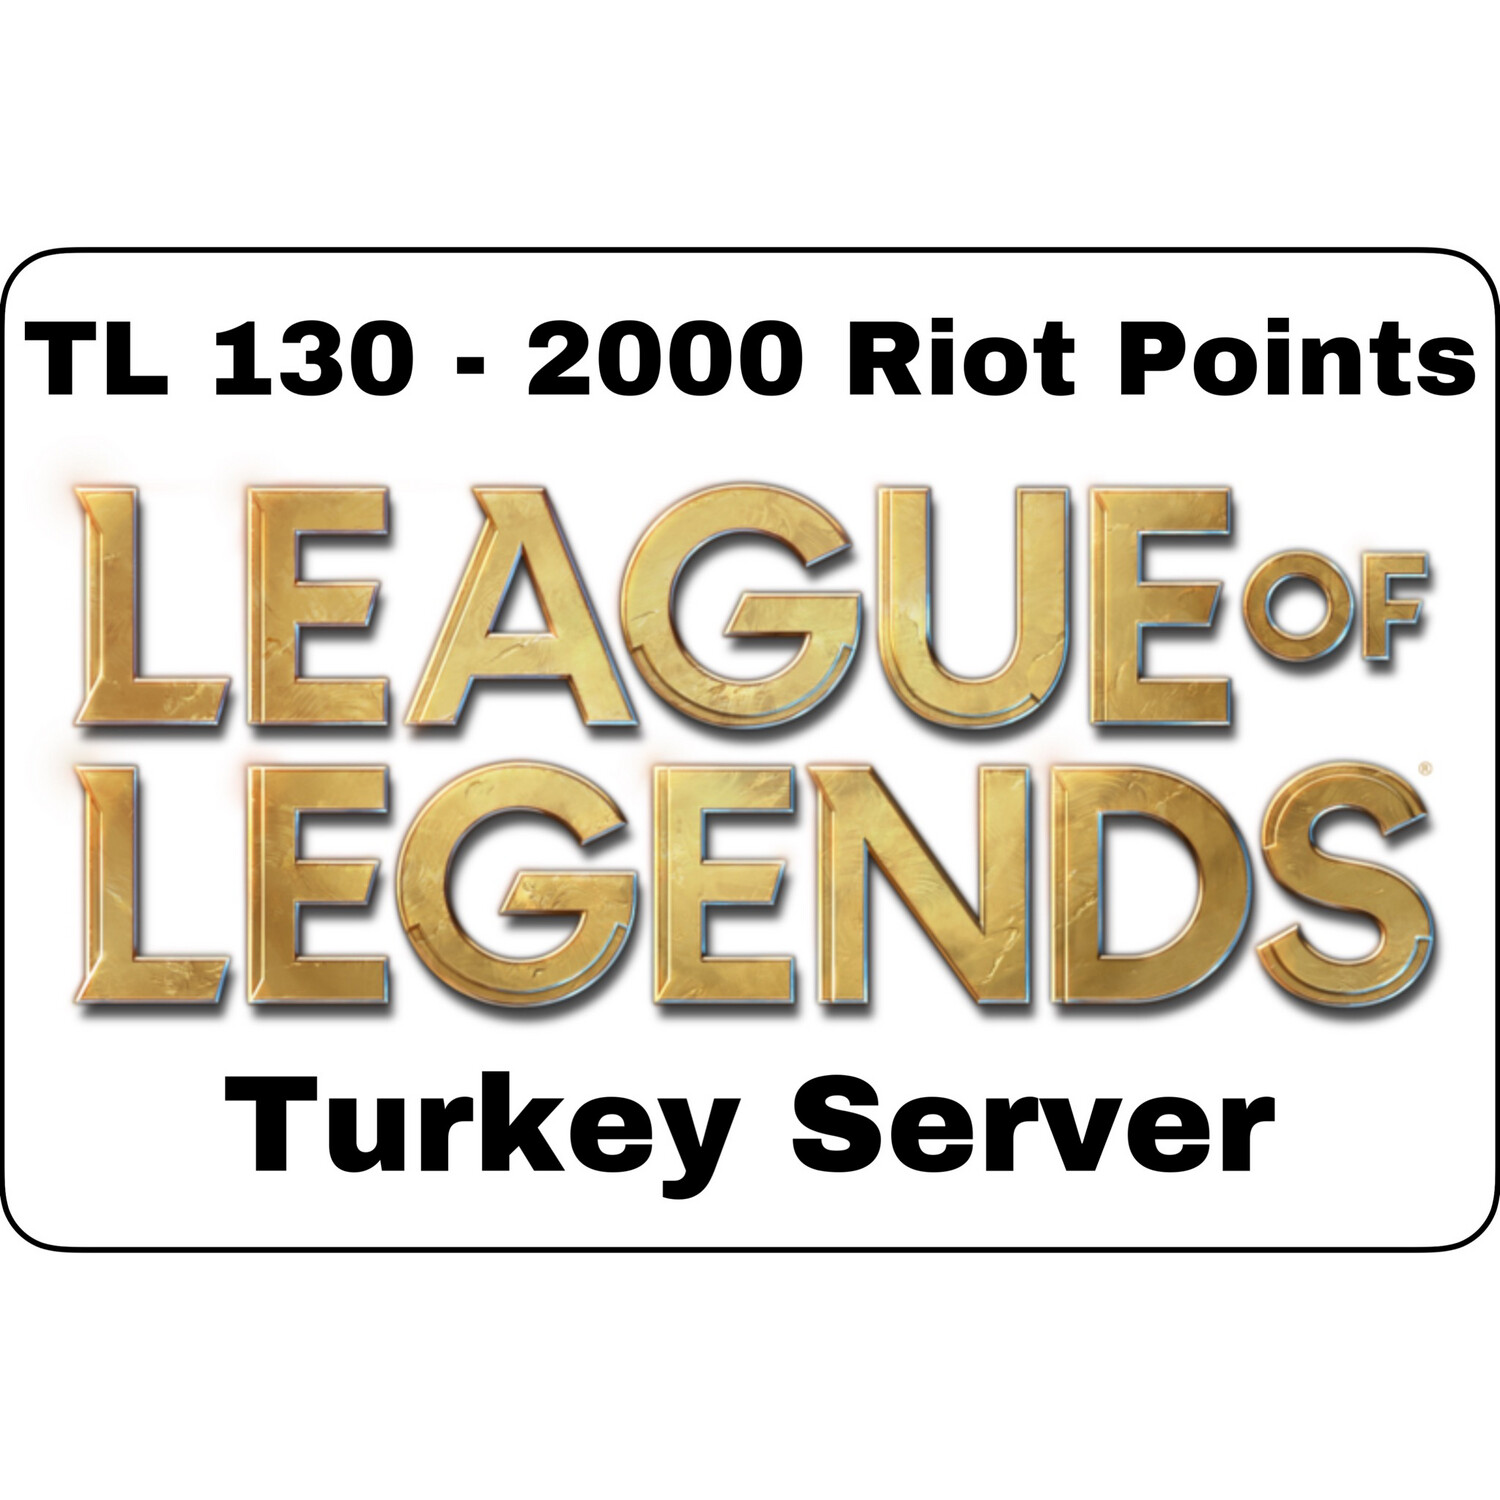 League of Legends TL 130 Turkey Server 2000 Riot Points